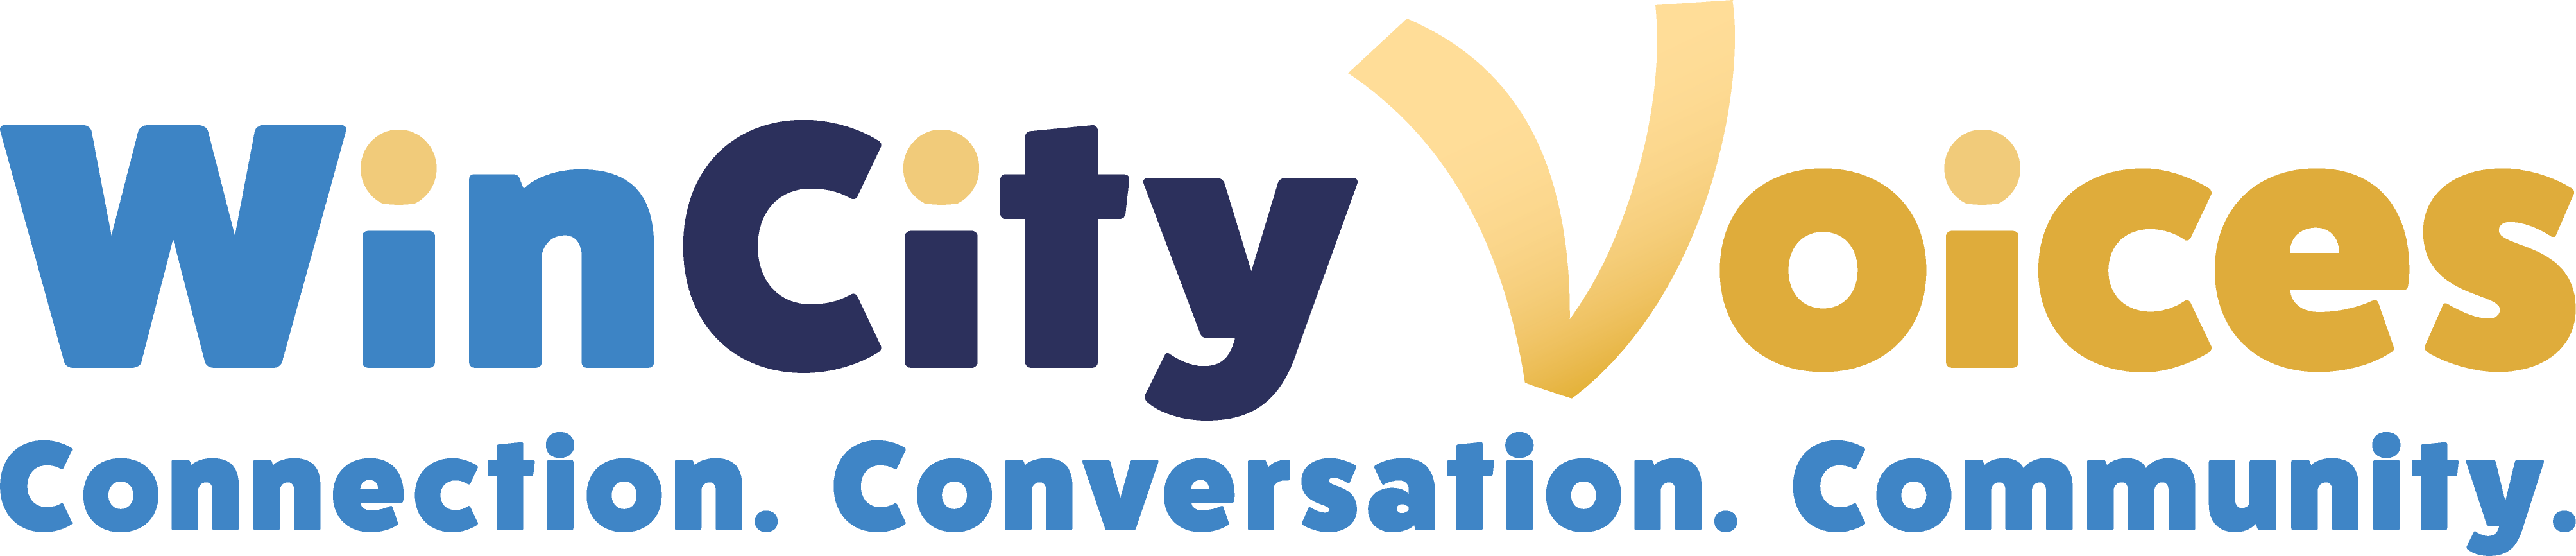 WinCity Voices | Connection. Conversation. Community.